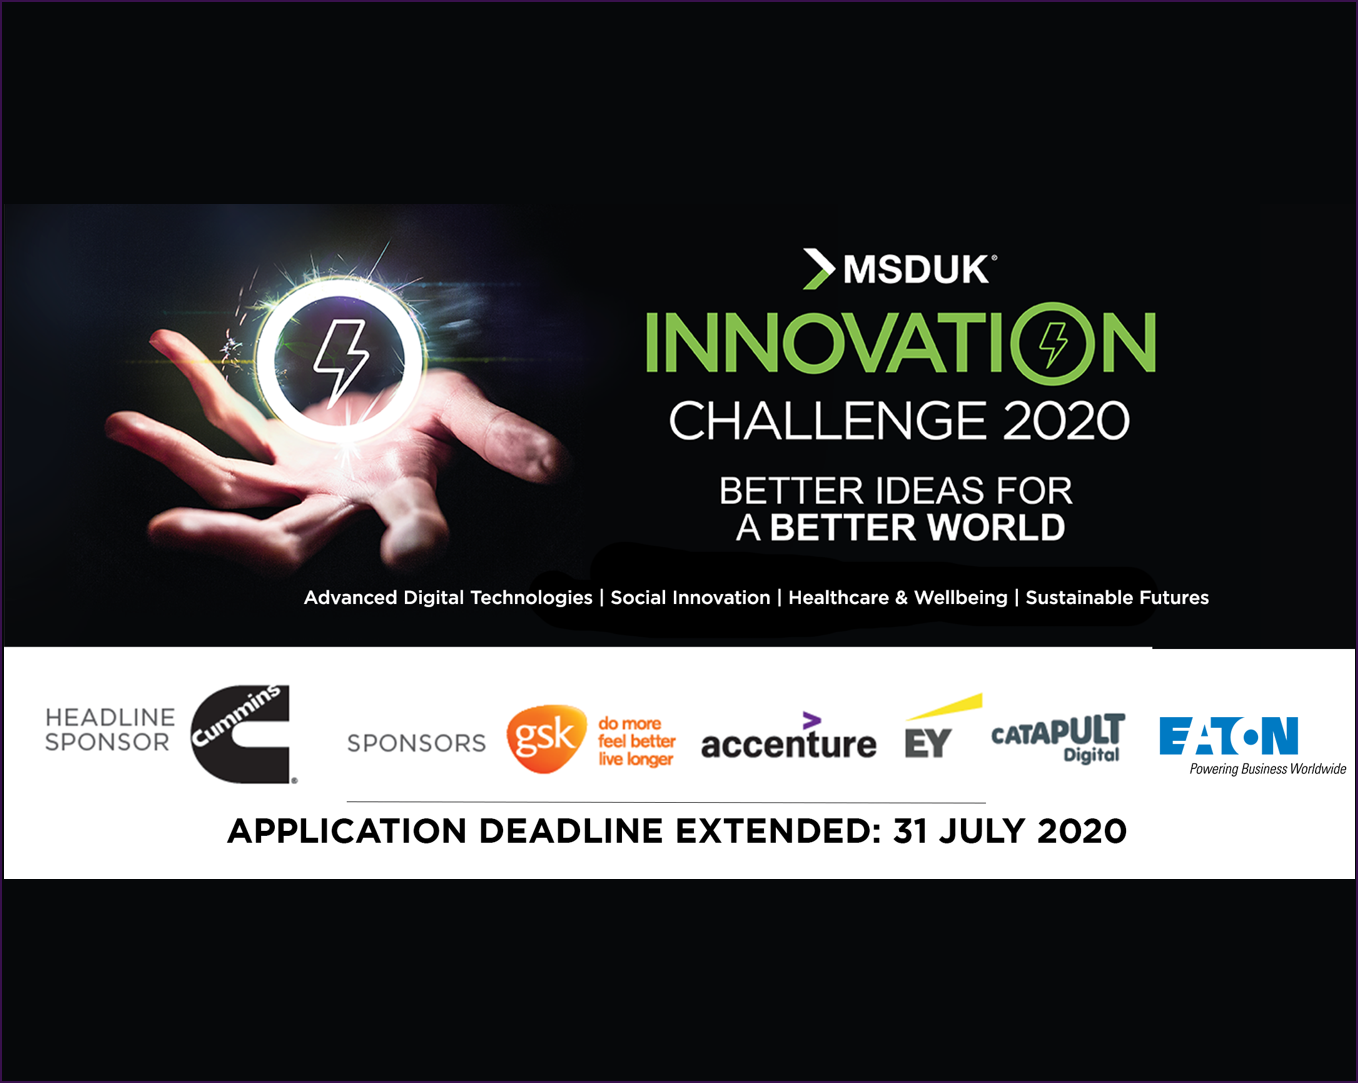 MSDUK Innovation Challenge 2020 Deadline Extended